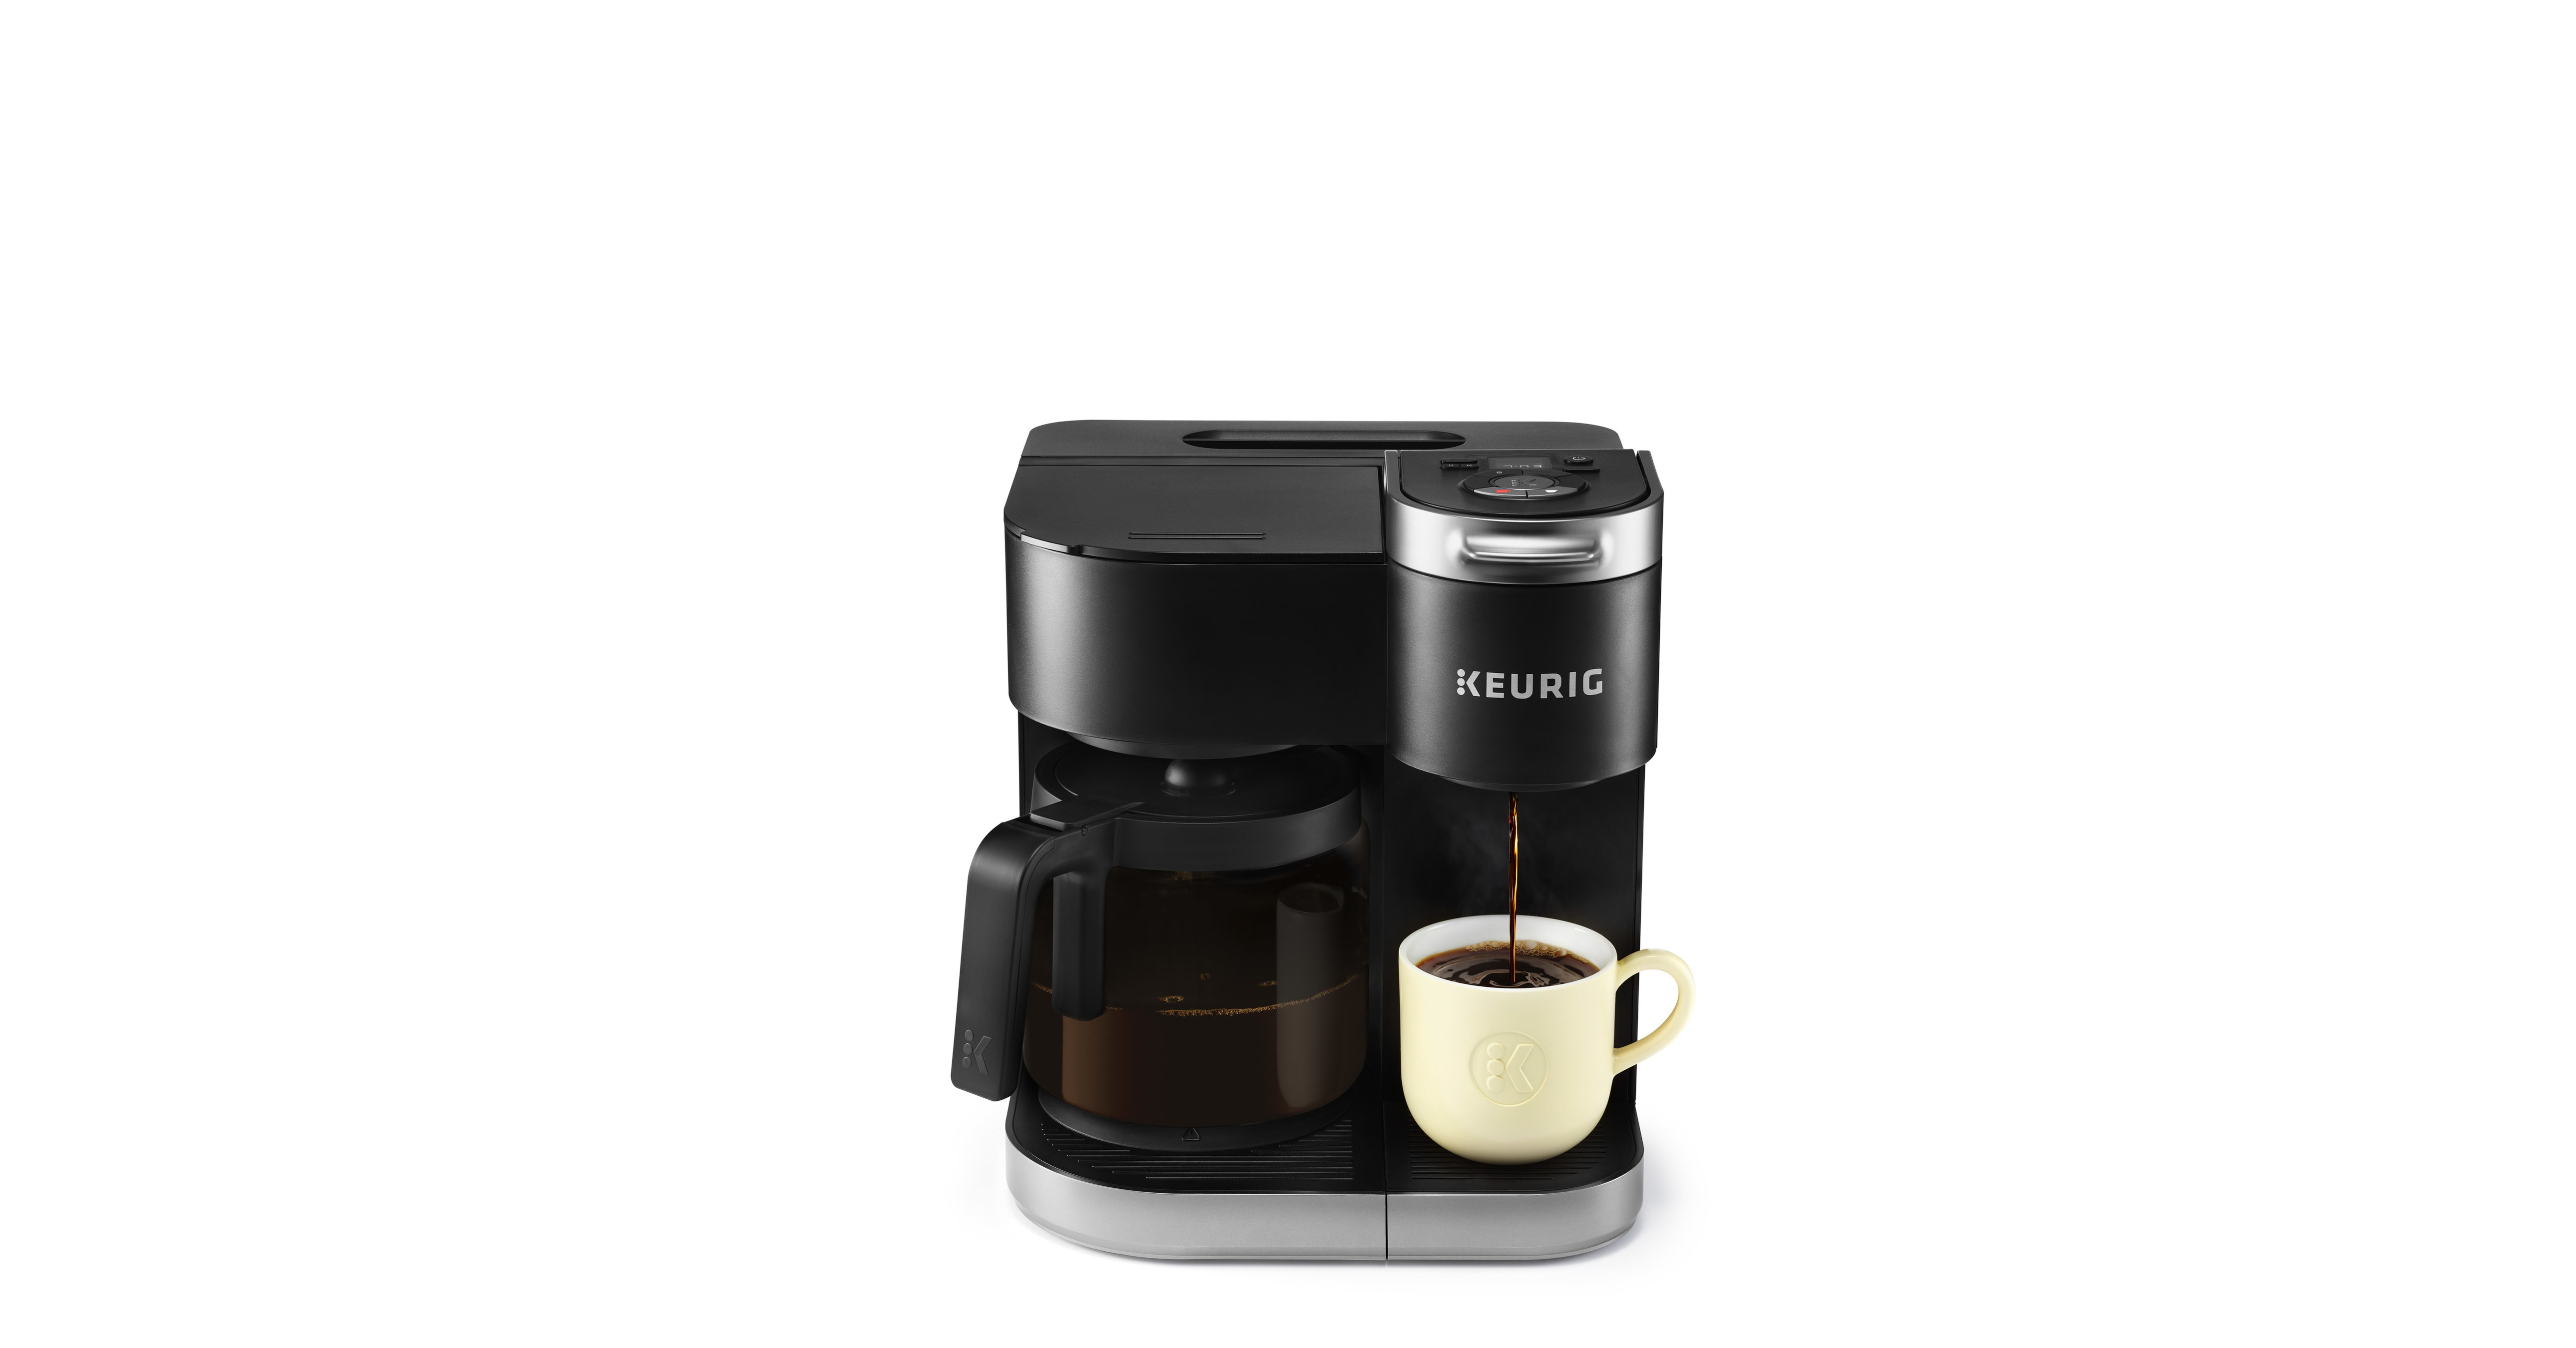 Keurig releases dual-function coffee maker portfolio - FoodBev Media